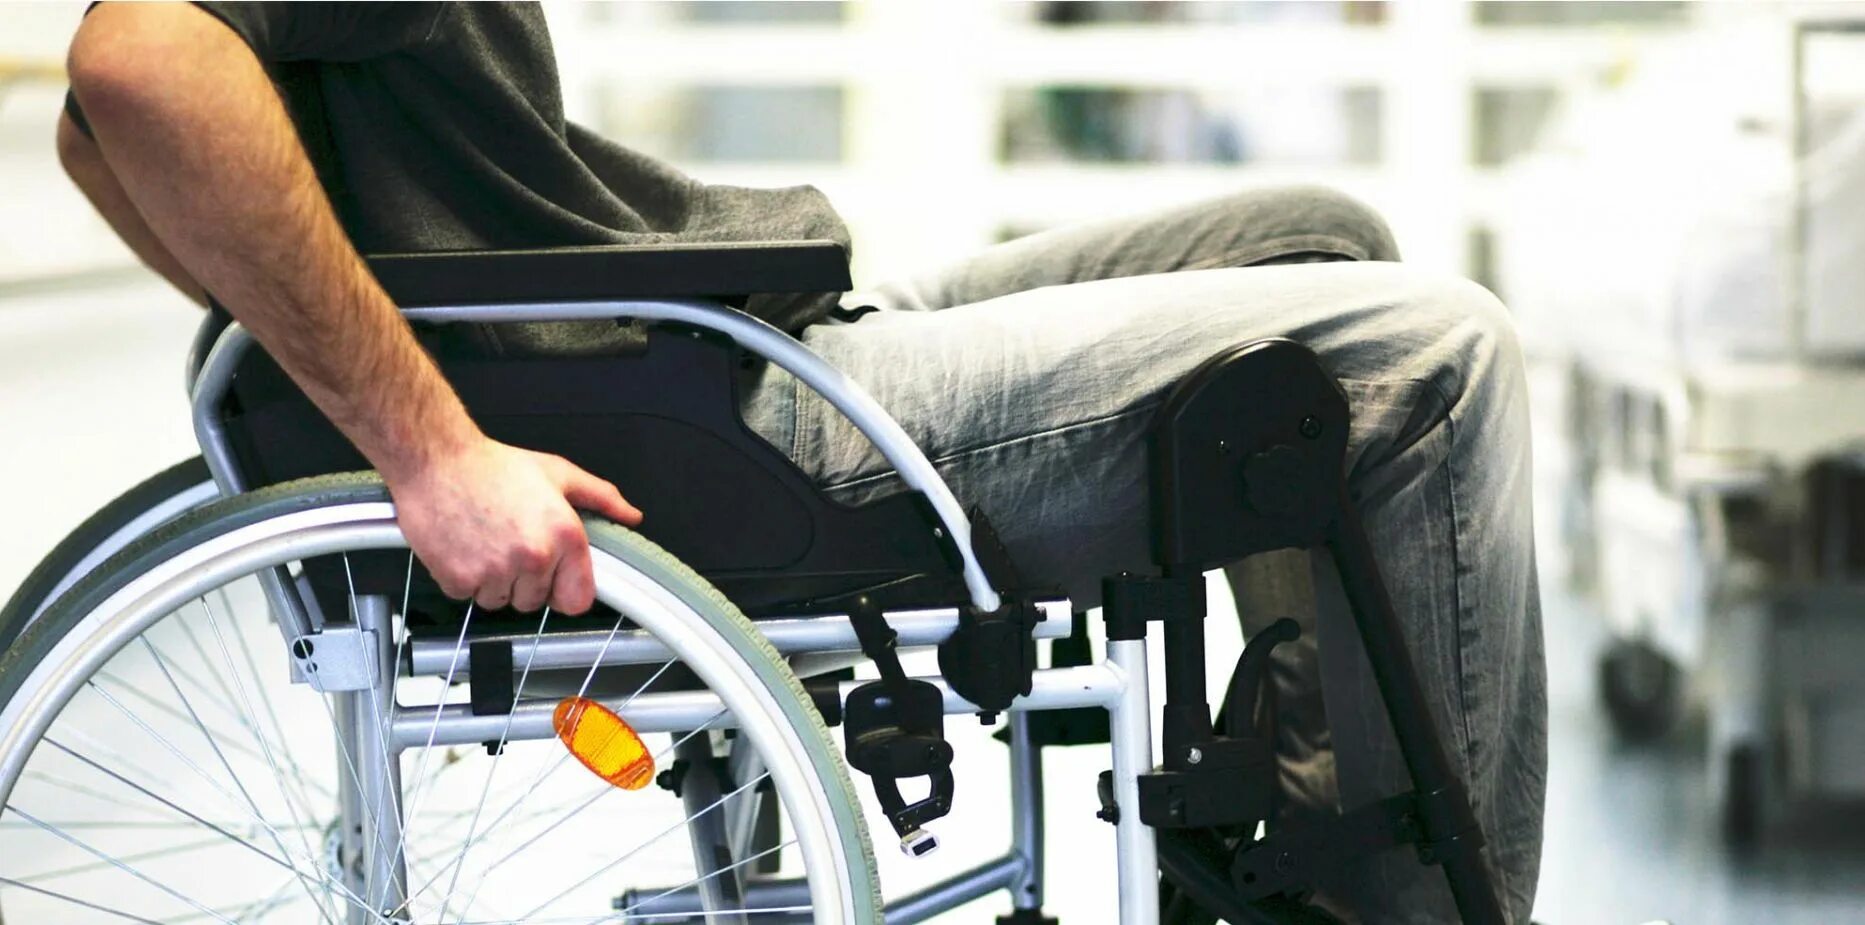 Rollstuhl. Чехлы для инвалидов. Ограниченные возможности колена. Боль в суставах инвалидное кресло.